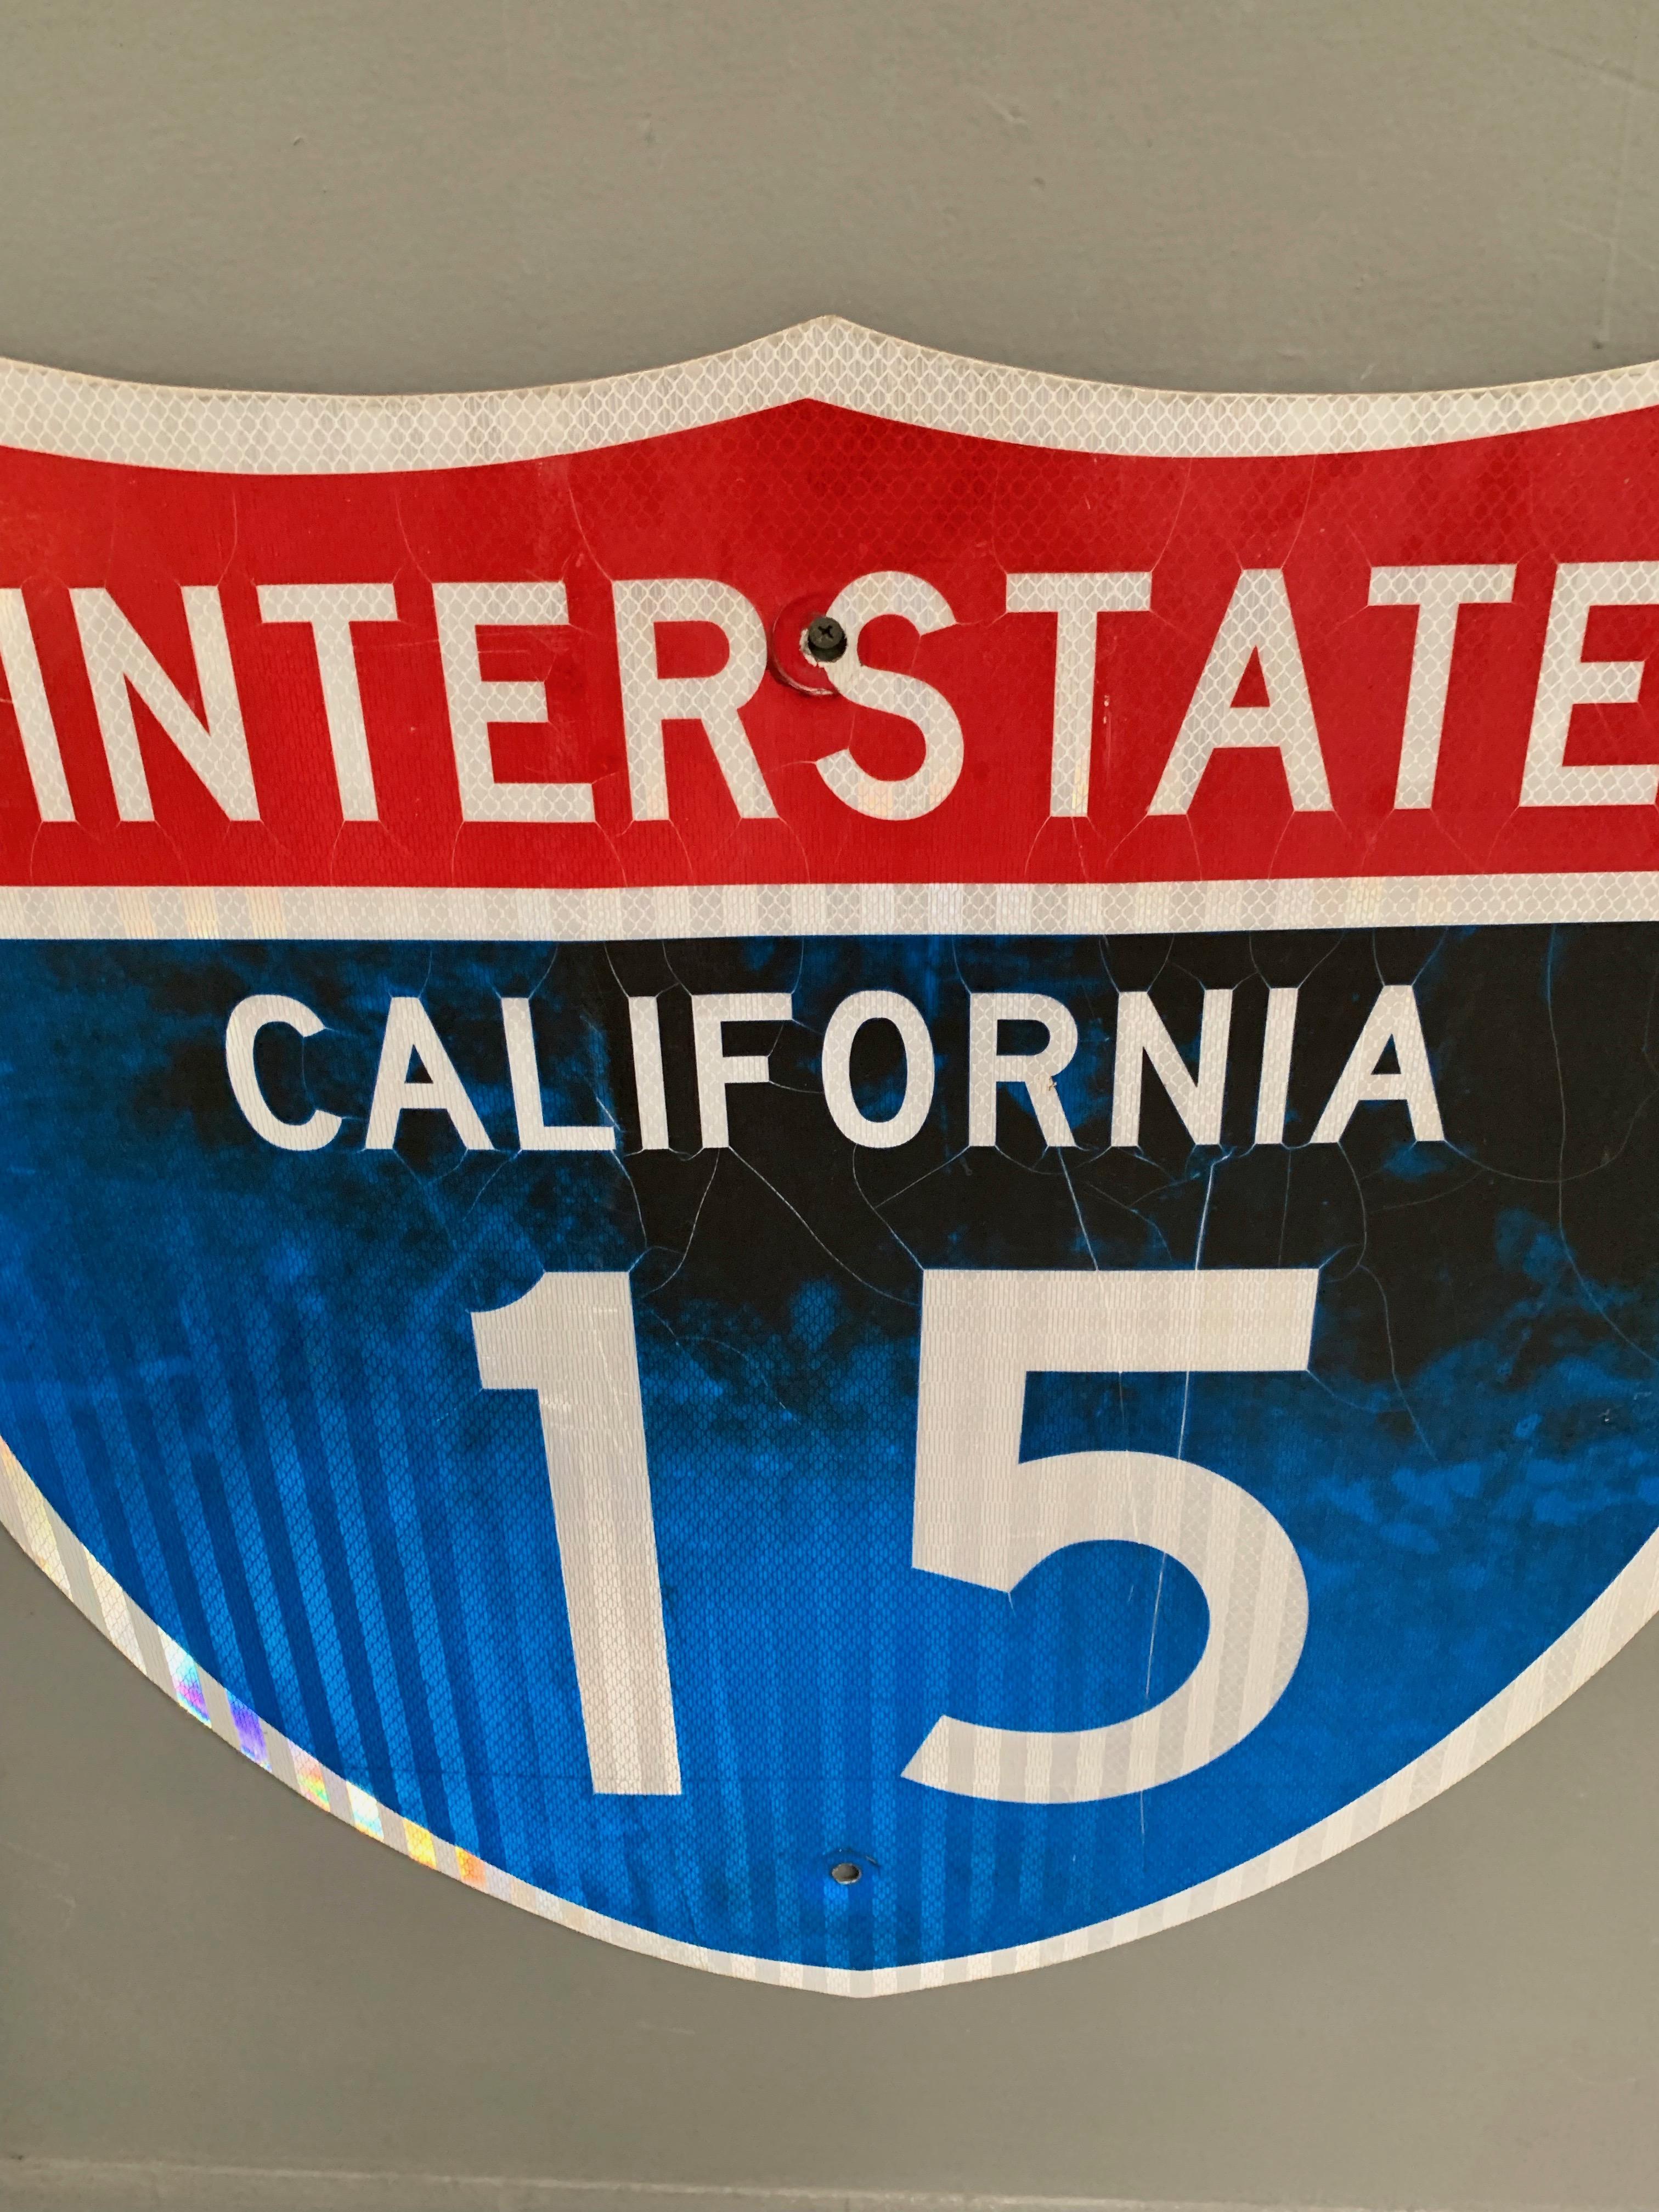 Autobahnschild der Interstate 15. Cooles Stück kalifornischer Beschilderung. Guter Zustand. Tolle Farbgebung und Patina.